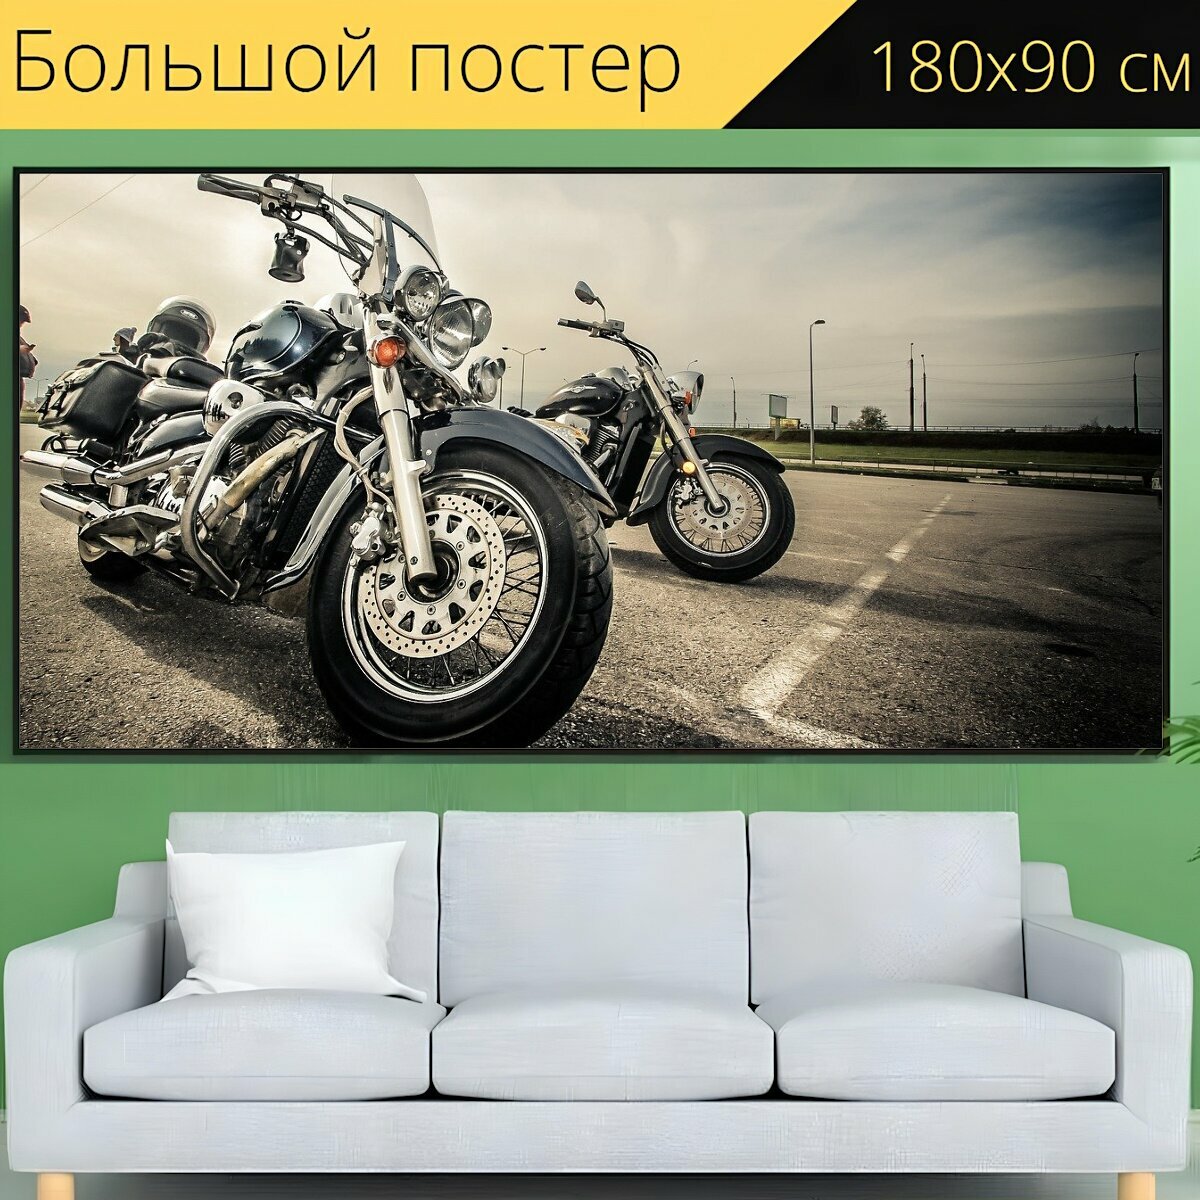 Большой постер "Мотоцикл, байк, мото" 180 x 90 см. для интерьера